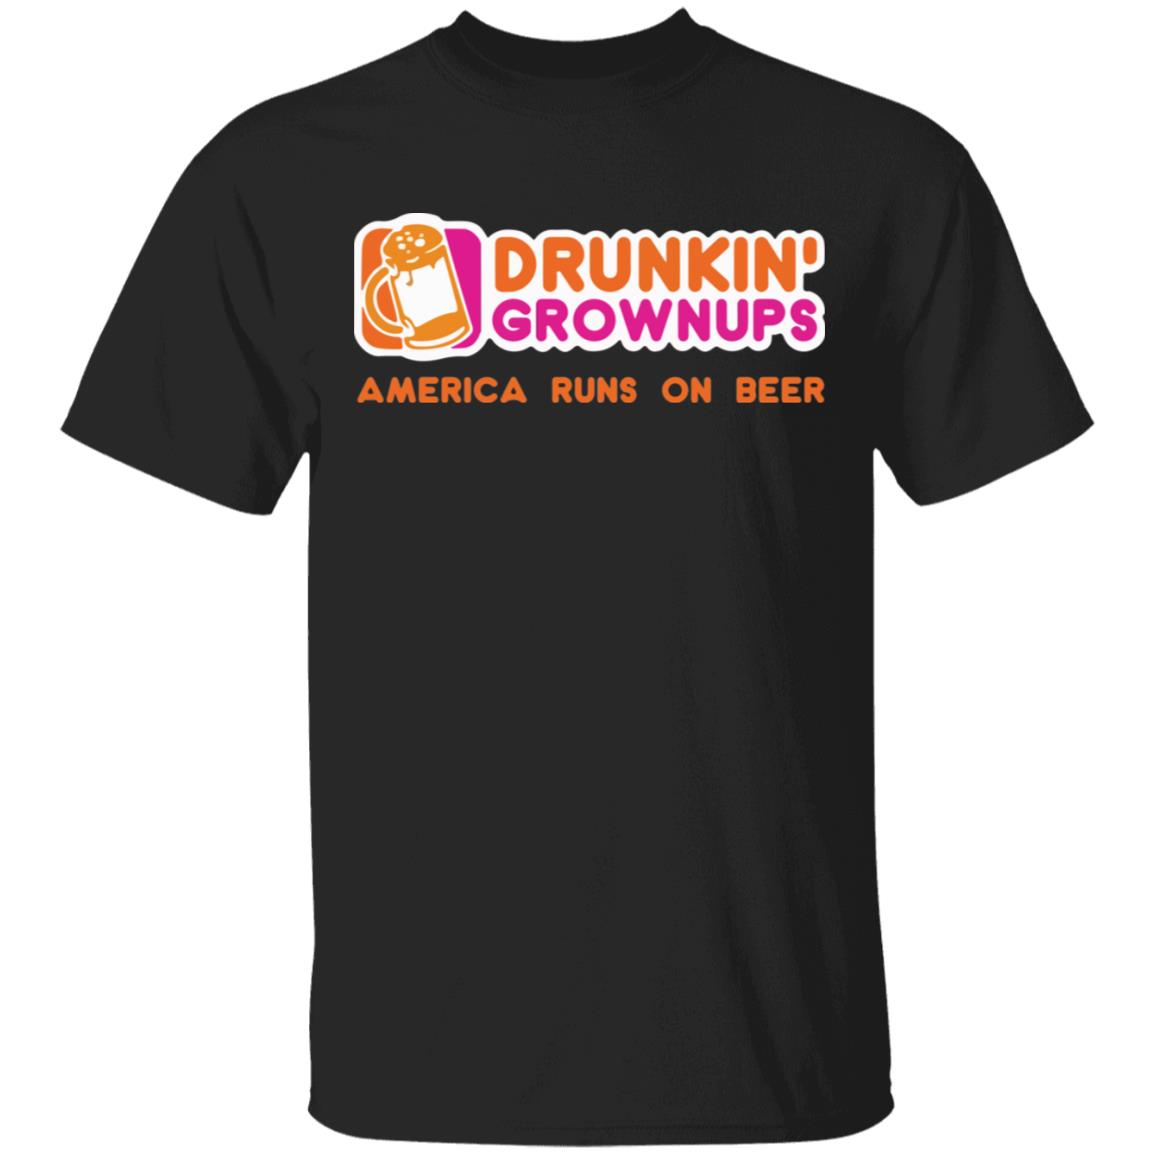 Drunkin Grownups America runs on beer shirt, hoodie